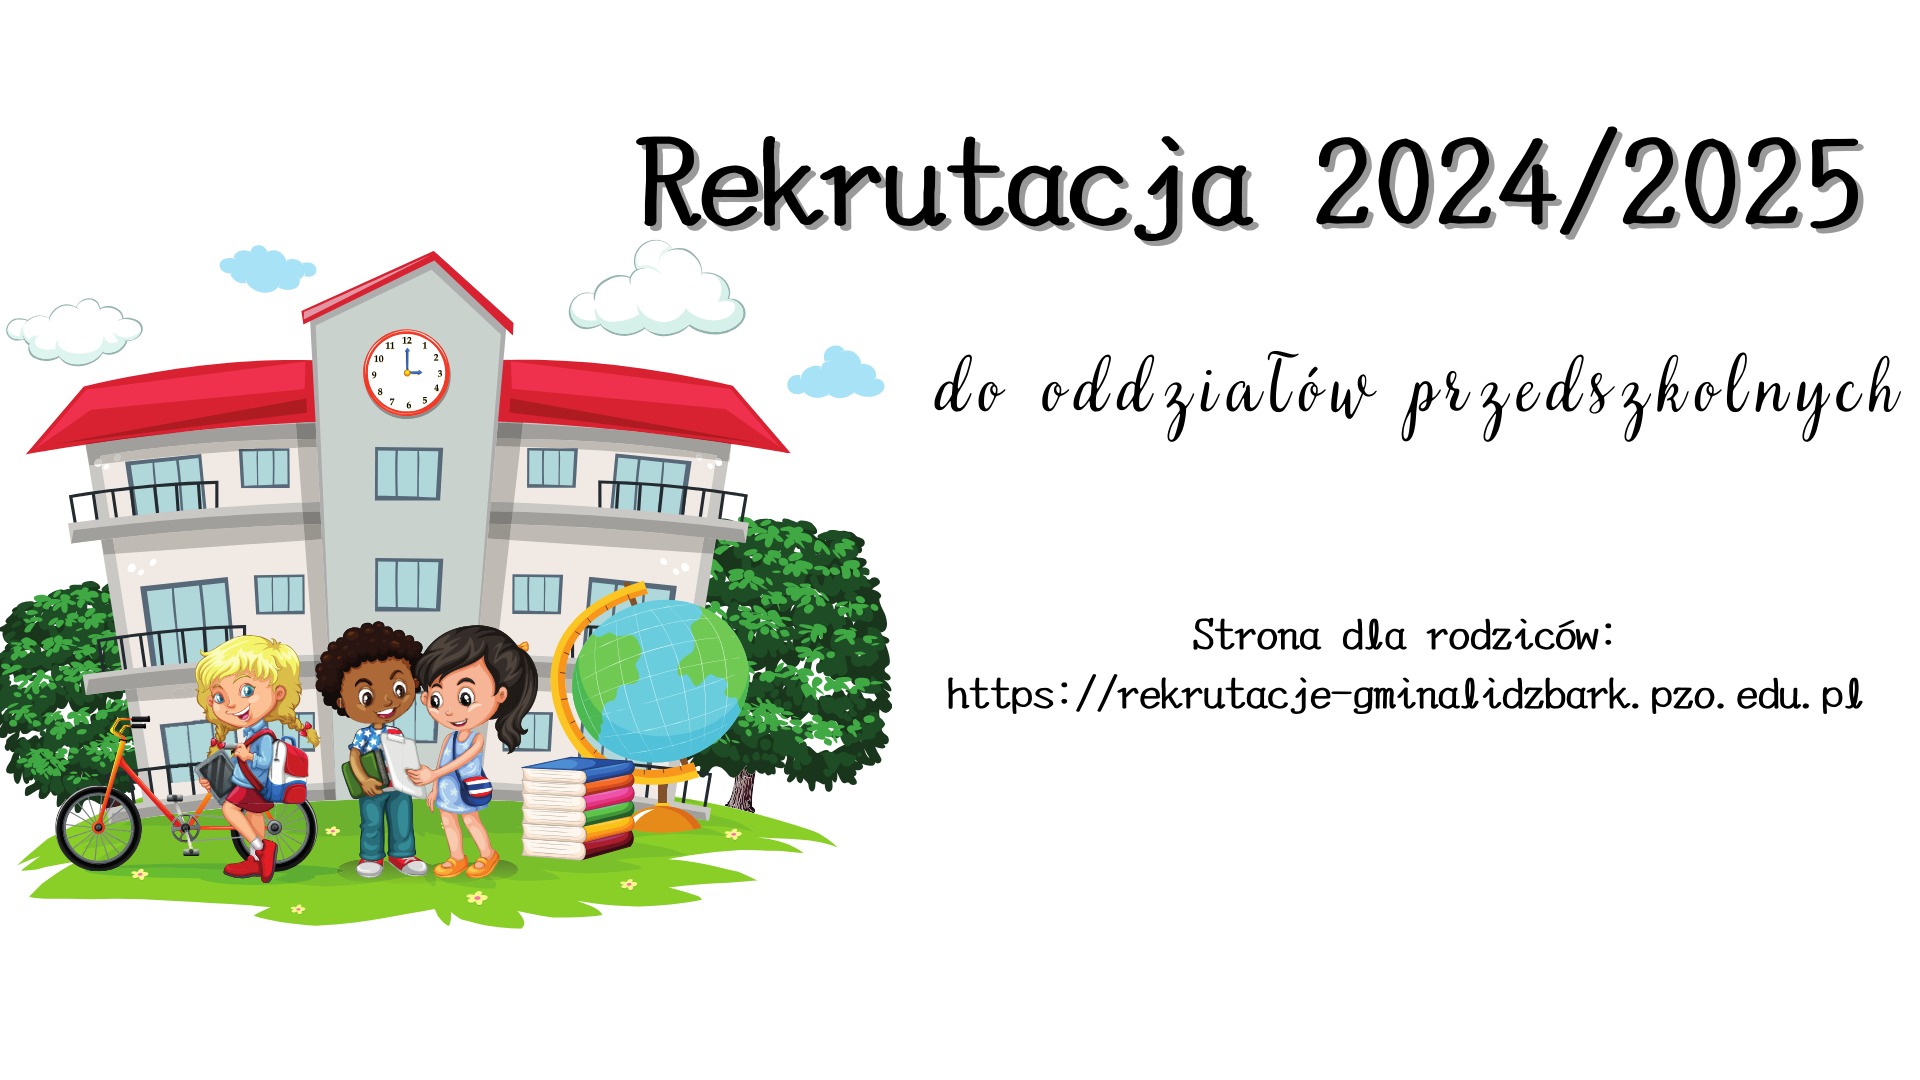 Rekrutacja 2024/2025 do oddziałów przedszkolnych - Obrazek 1